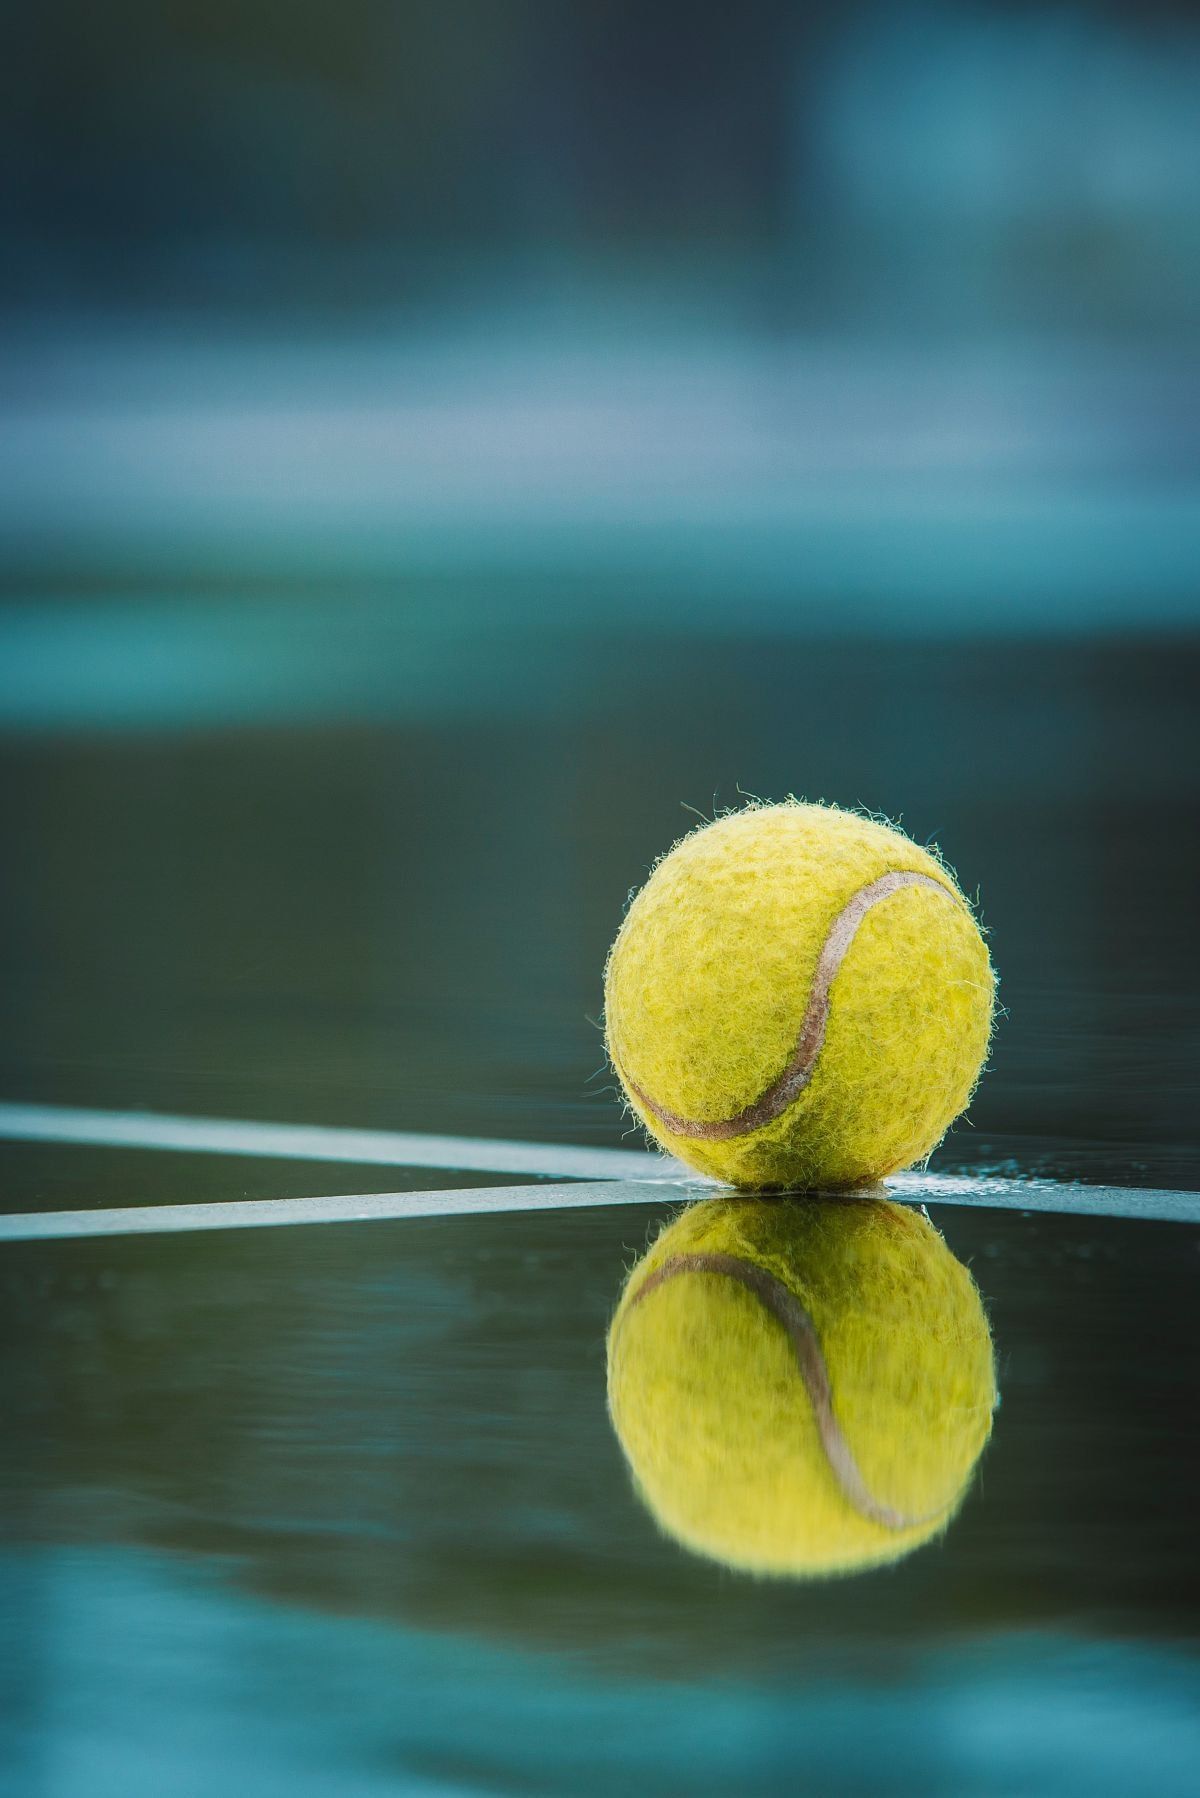 tennisball_reflection